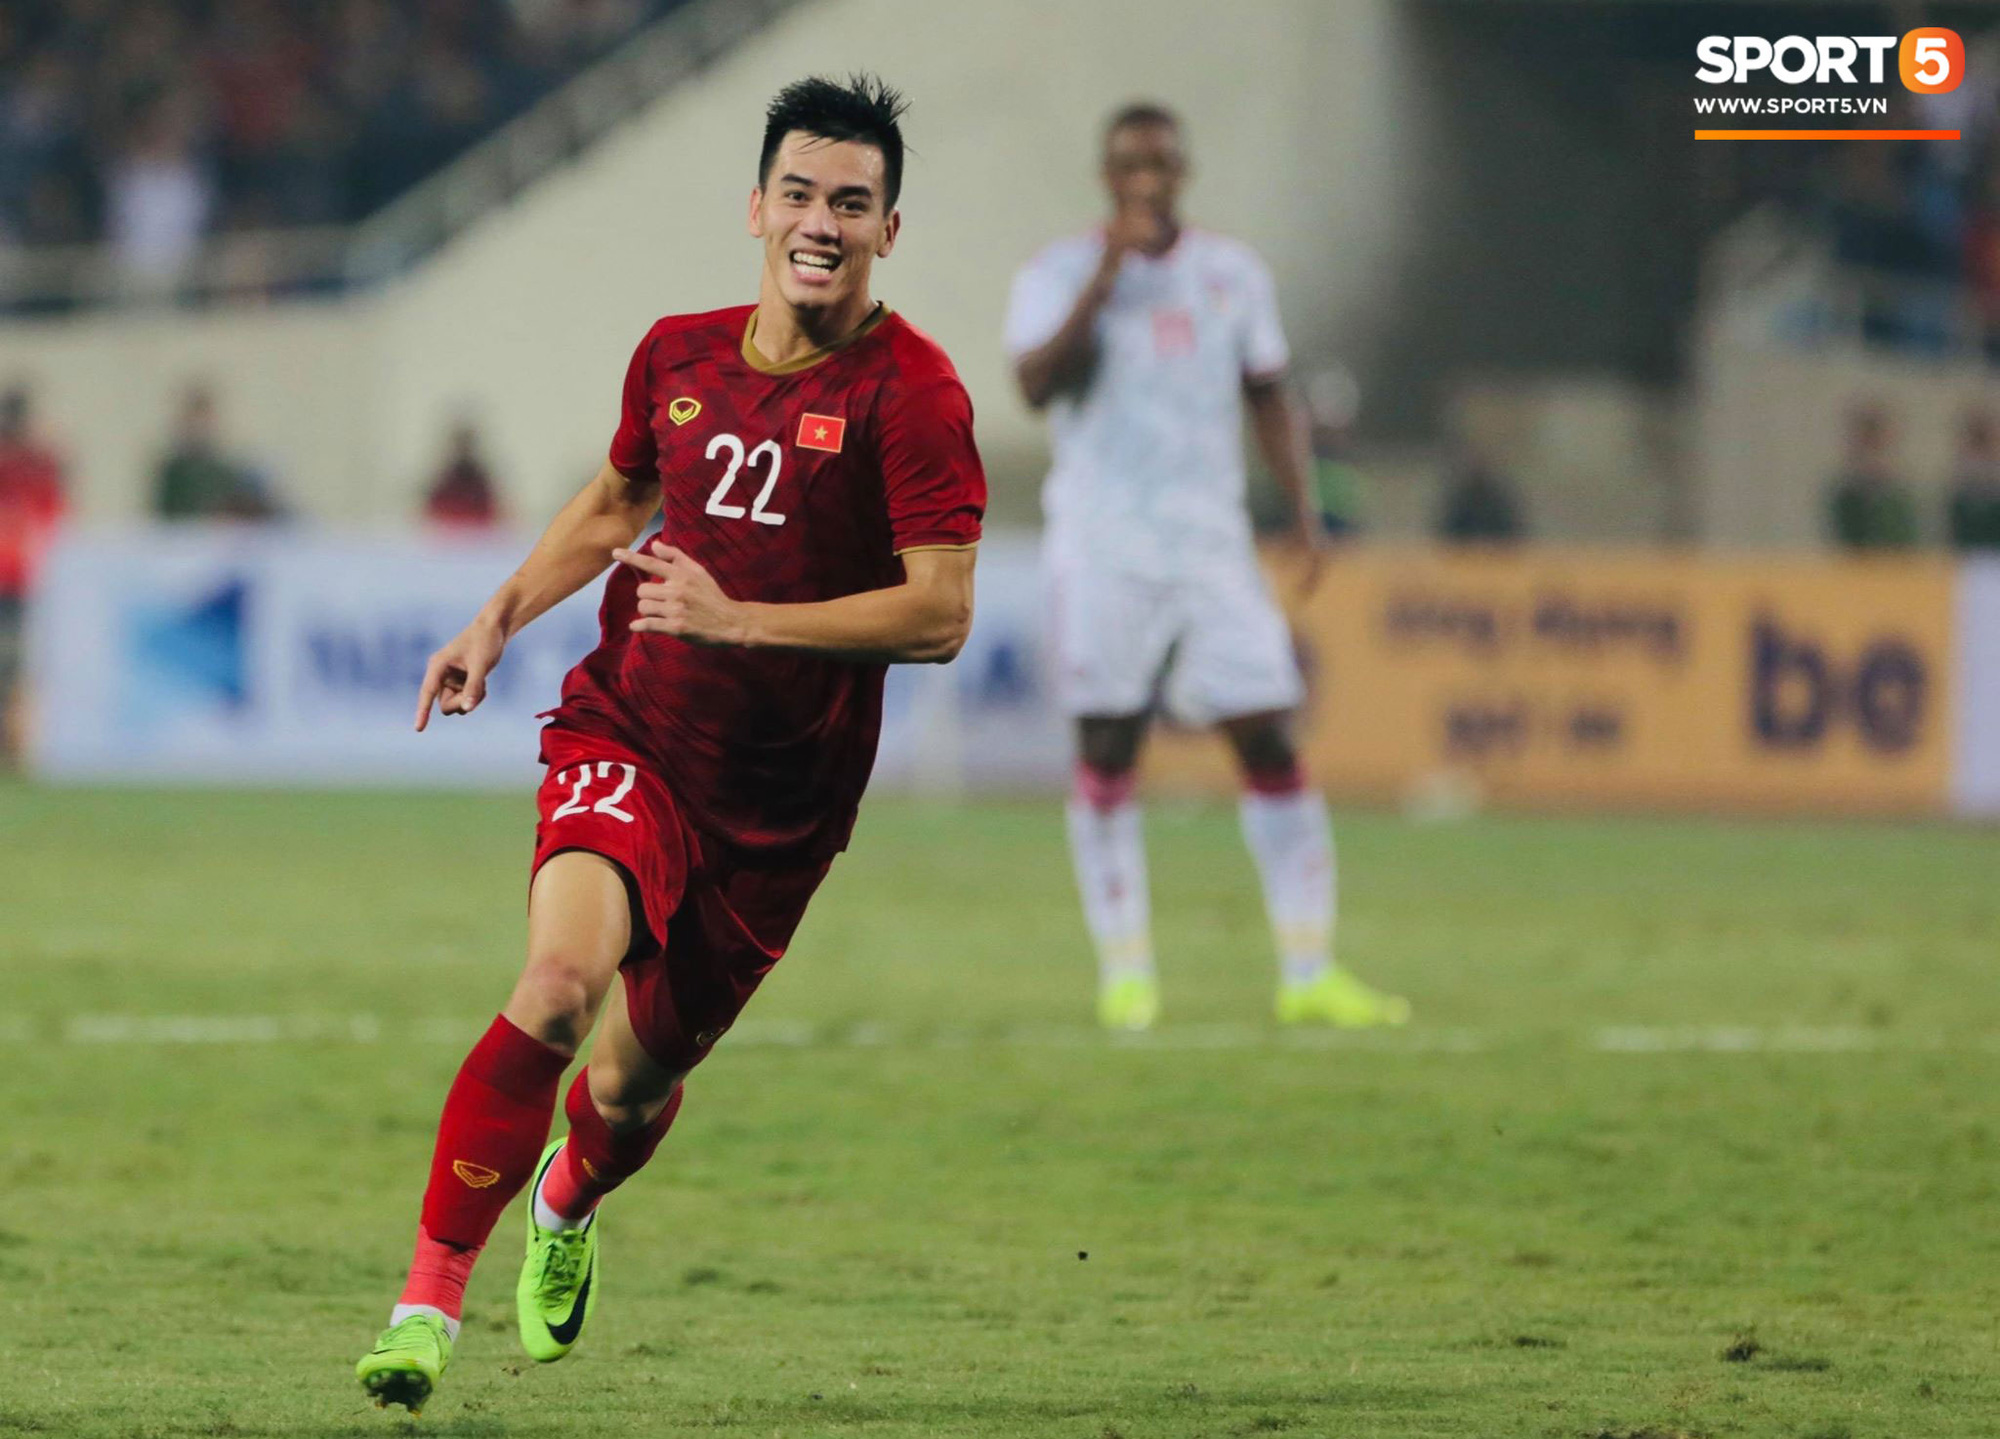 Không phải Quang Hải, báo Úc khuyên các đội bóng ở Xứ sở kangaroo ký hợp đồng với một cầu thủ khác của U23 Việt Nam - Ảnh 2.